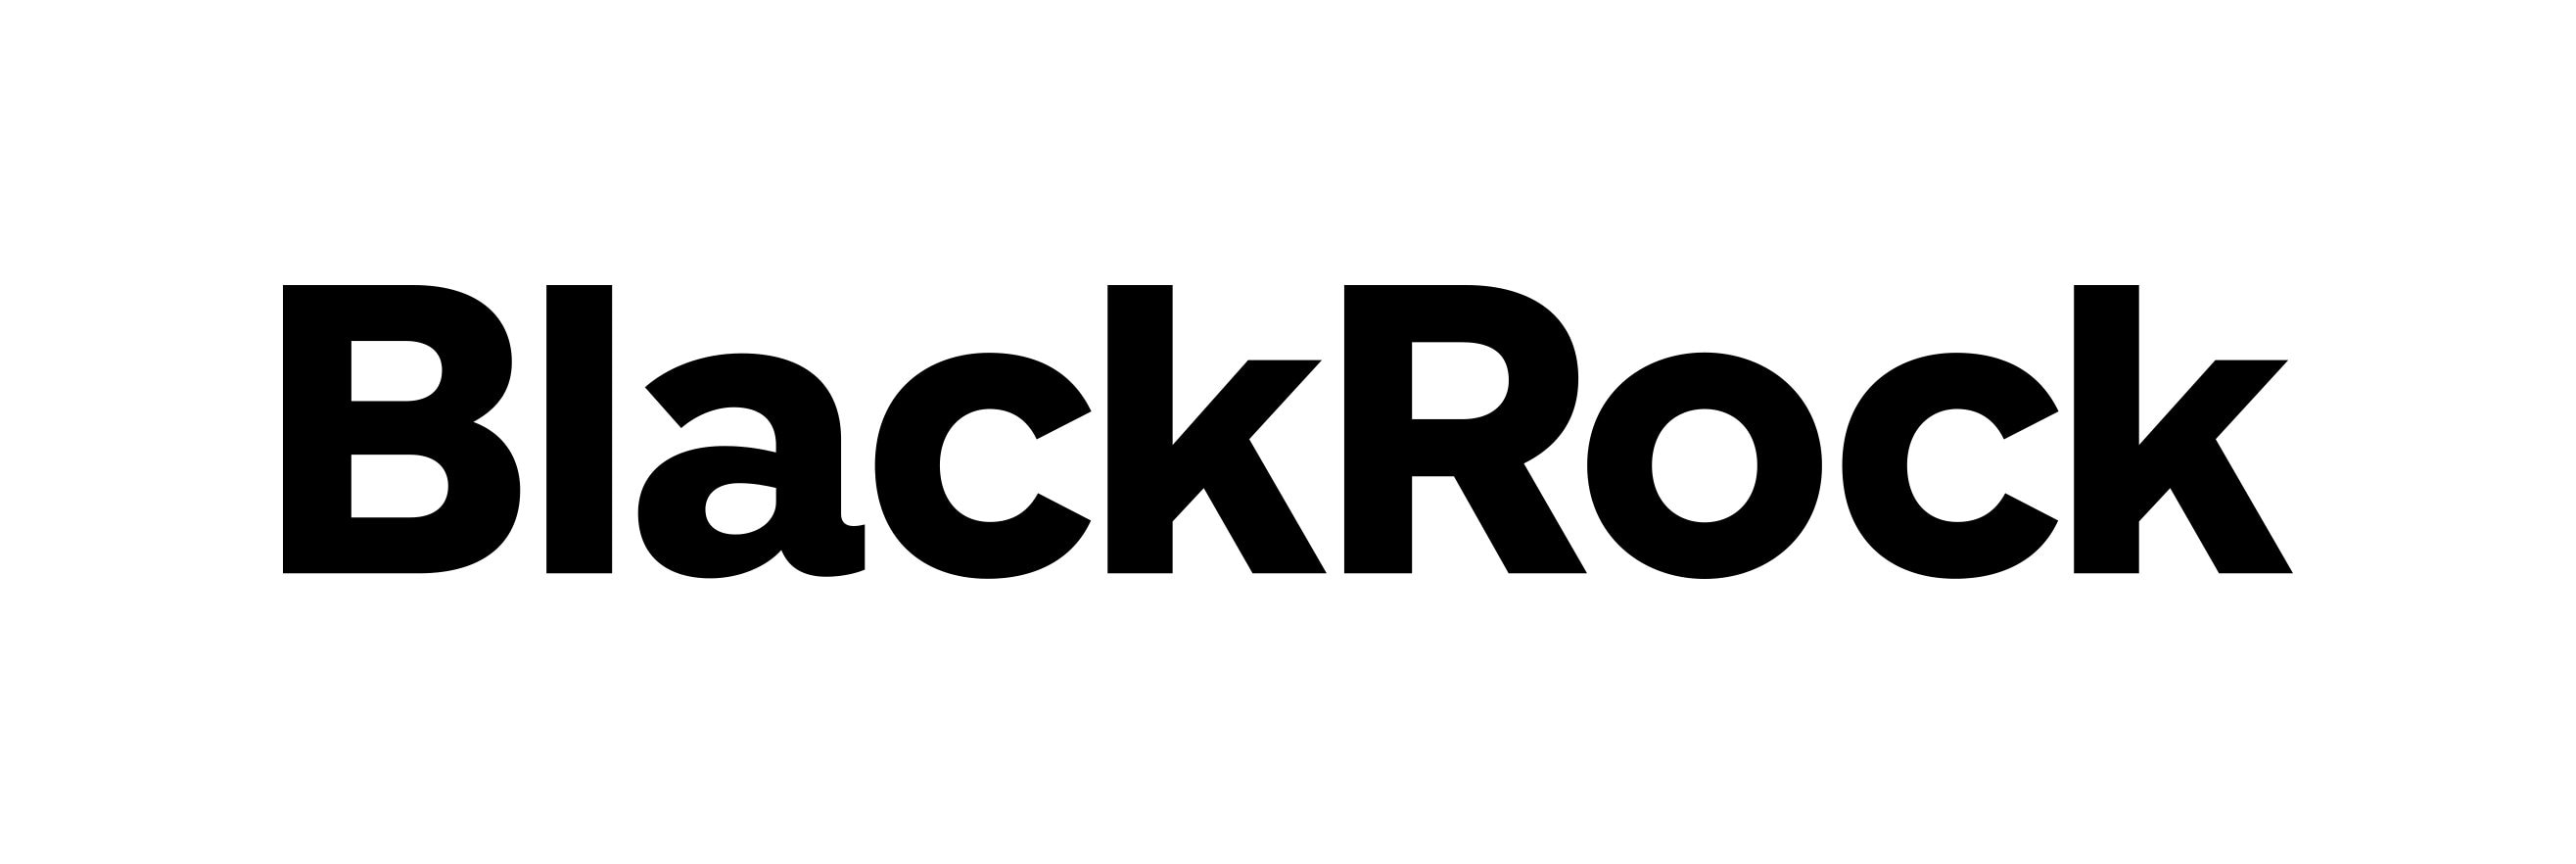 BlackRock Investment Management